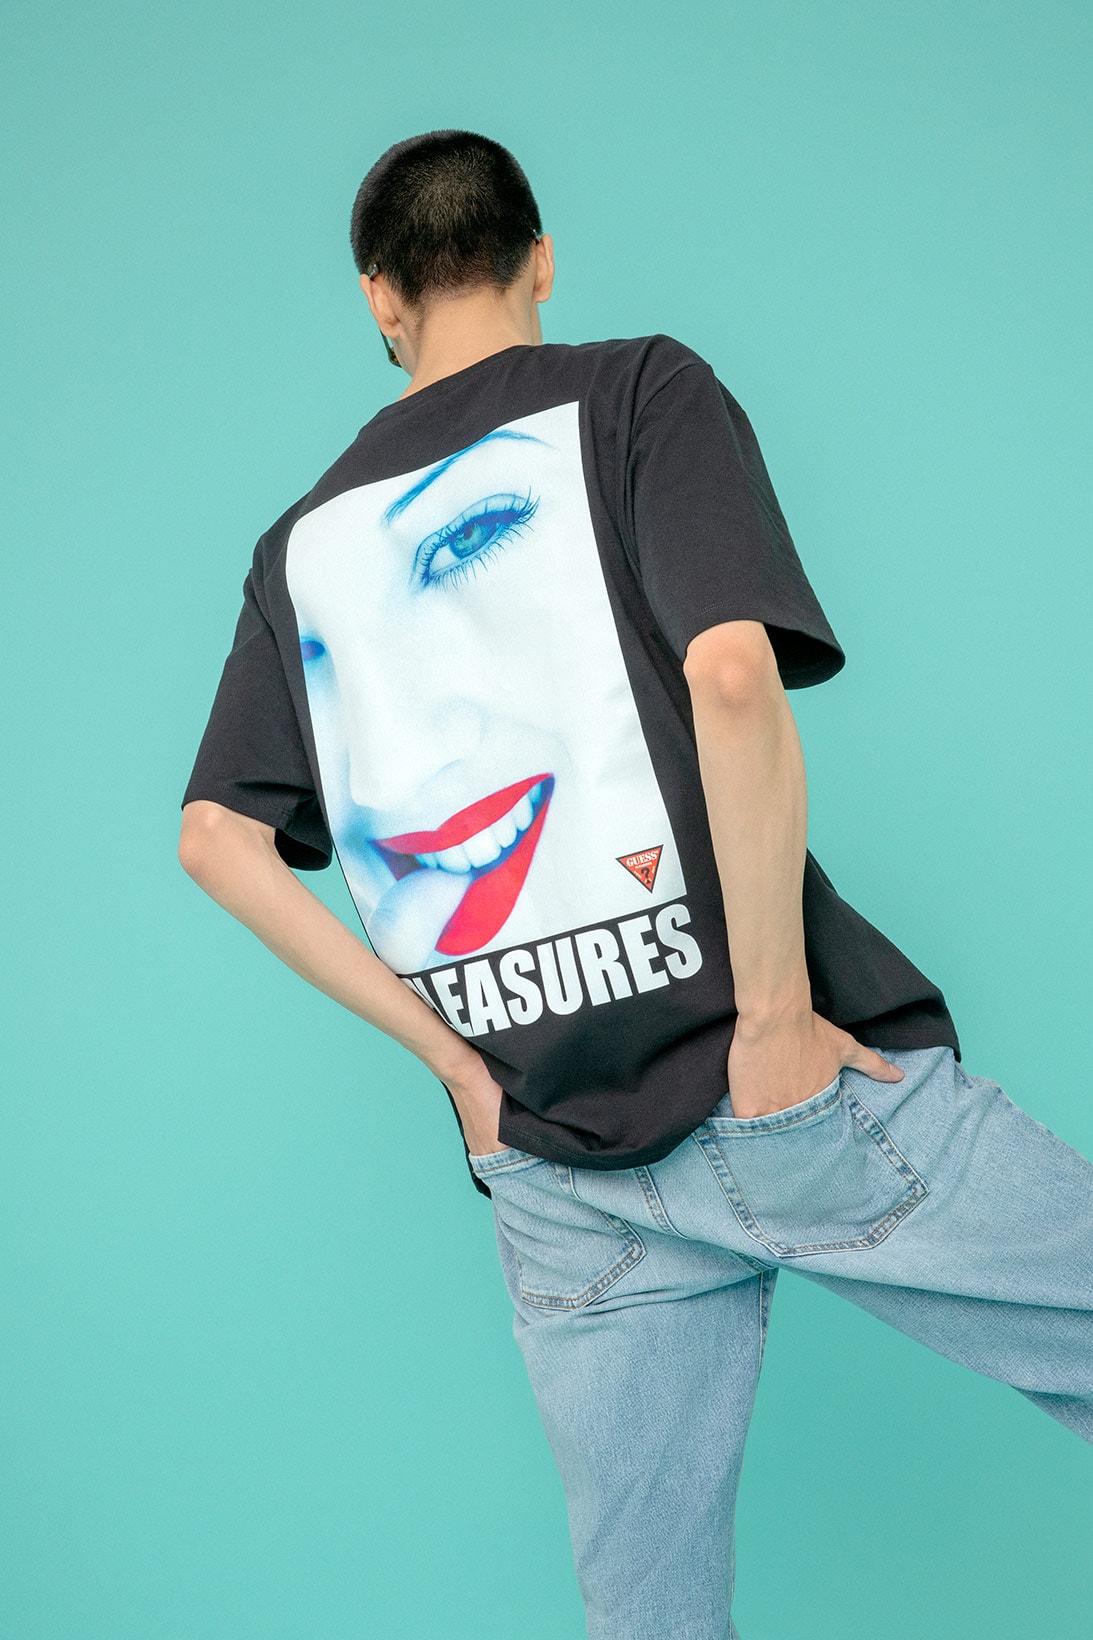 guess originals pleasures drew barrymore collaboration campaign tee t shirt denim jeans pants